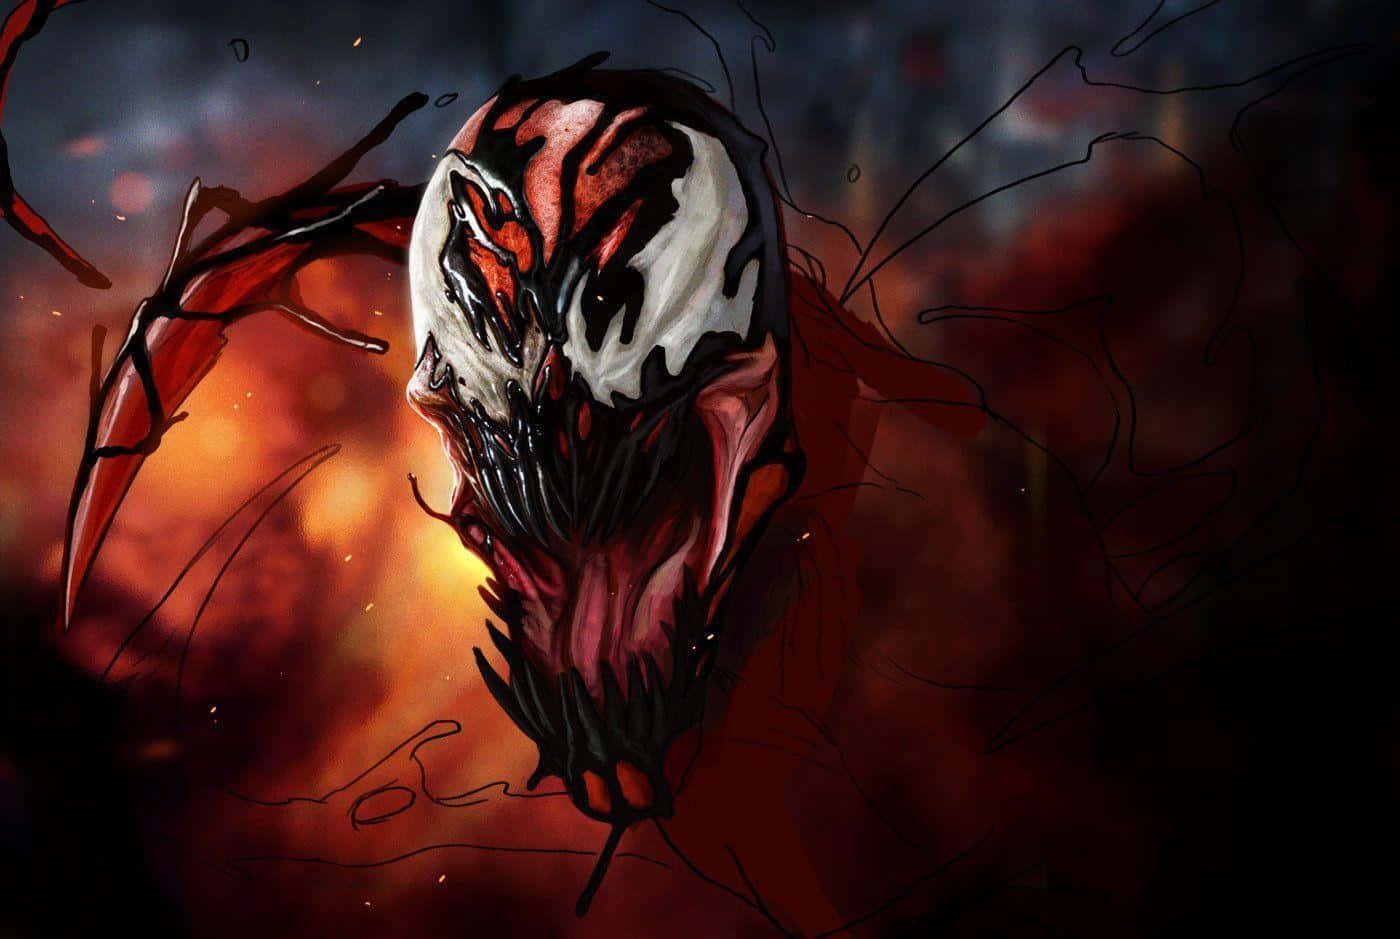 Carnage Unleashed - A Menacing Marvel Supervillain